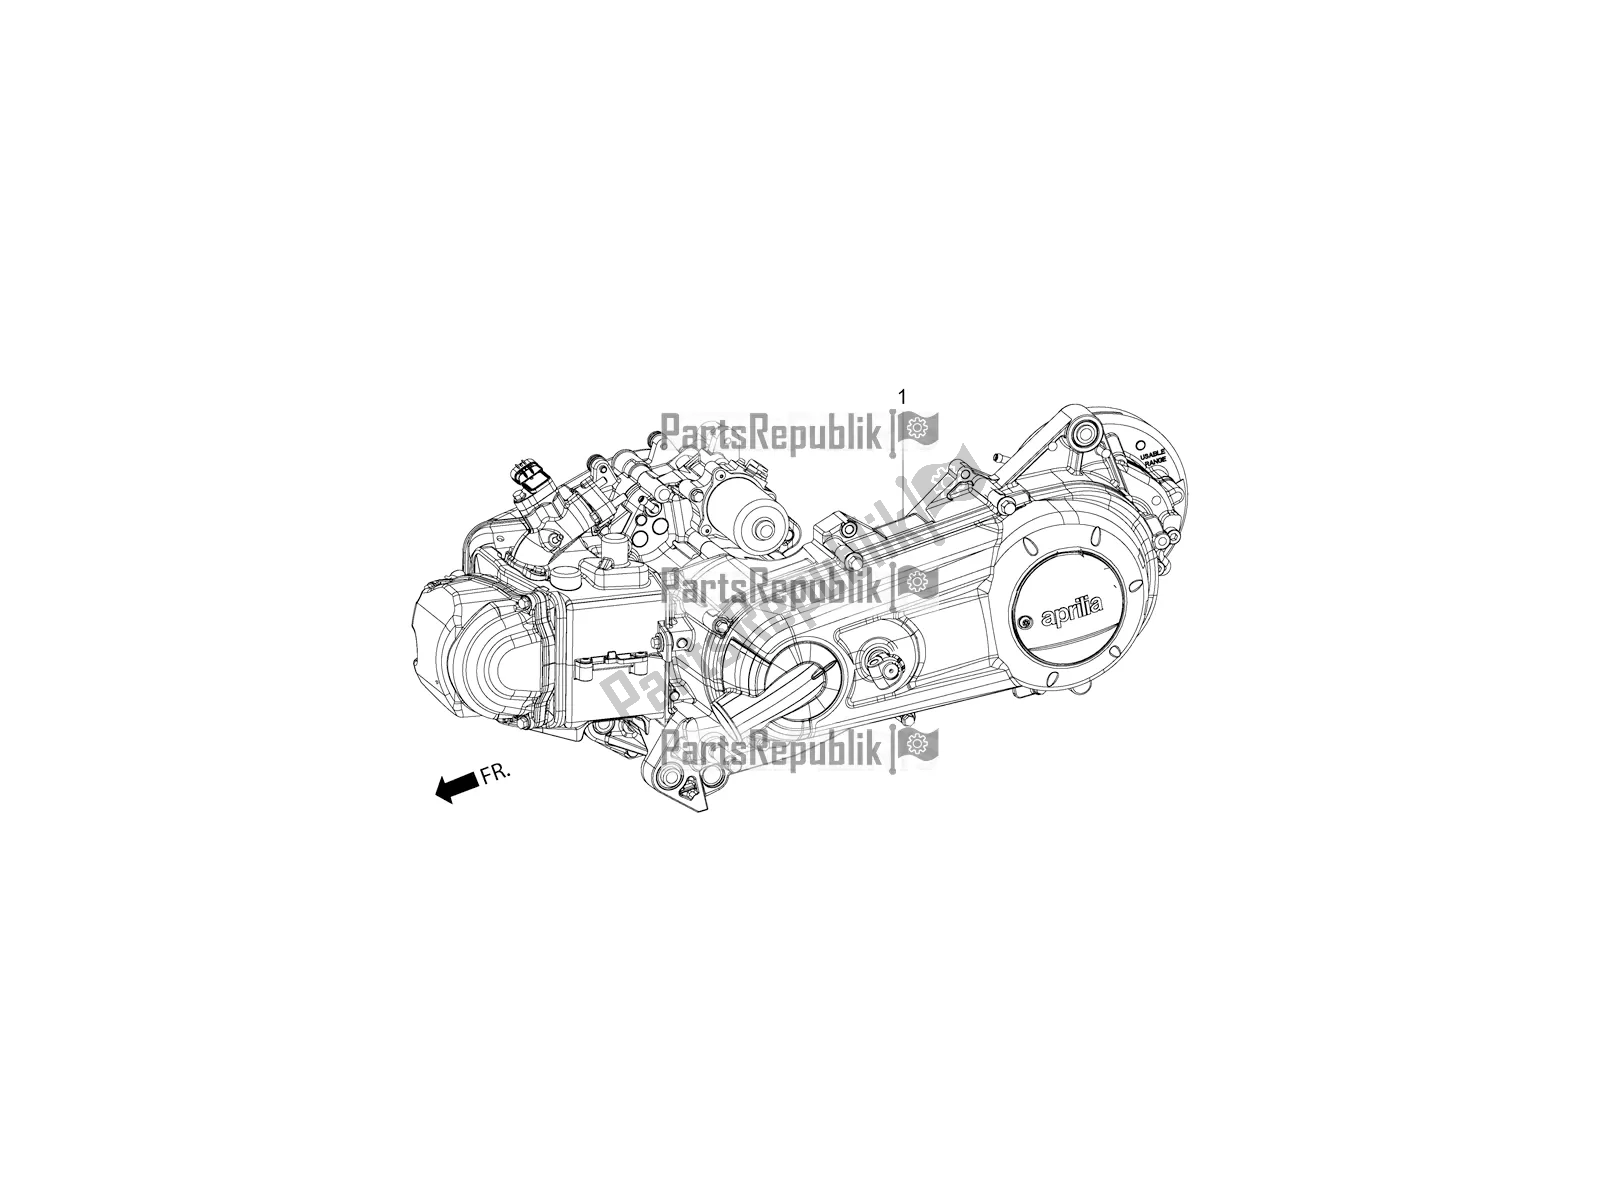 Todas as partes de Complete Engine do Aprilia SR Motard 150 HE Carb. Race 2019